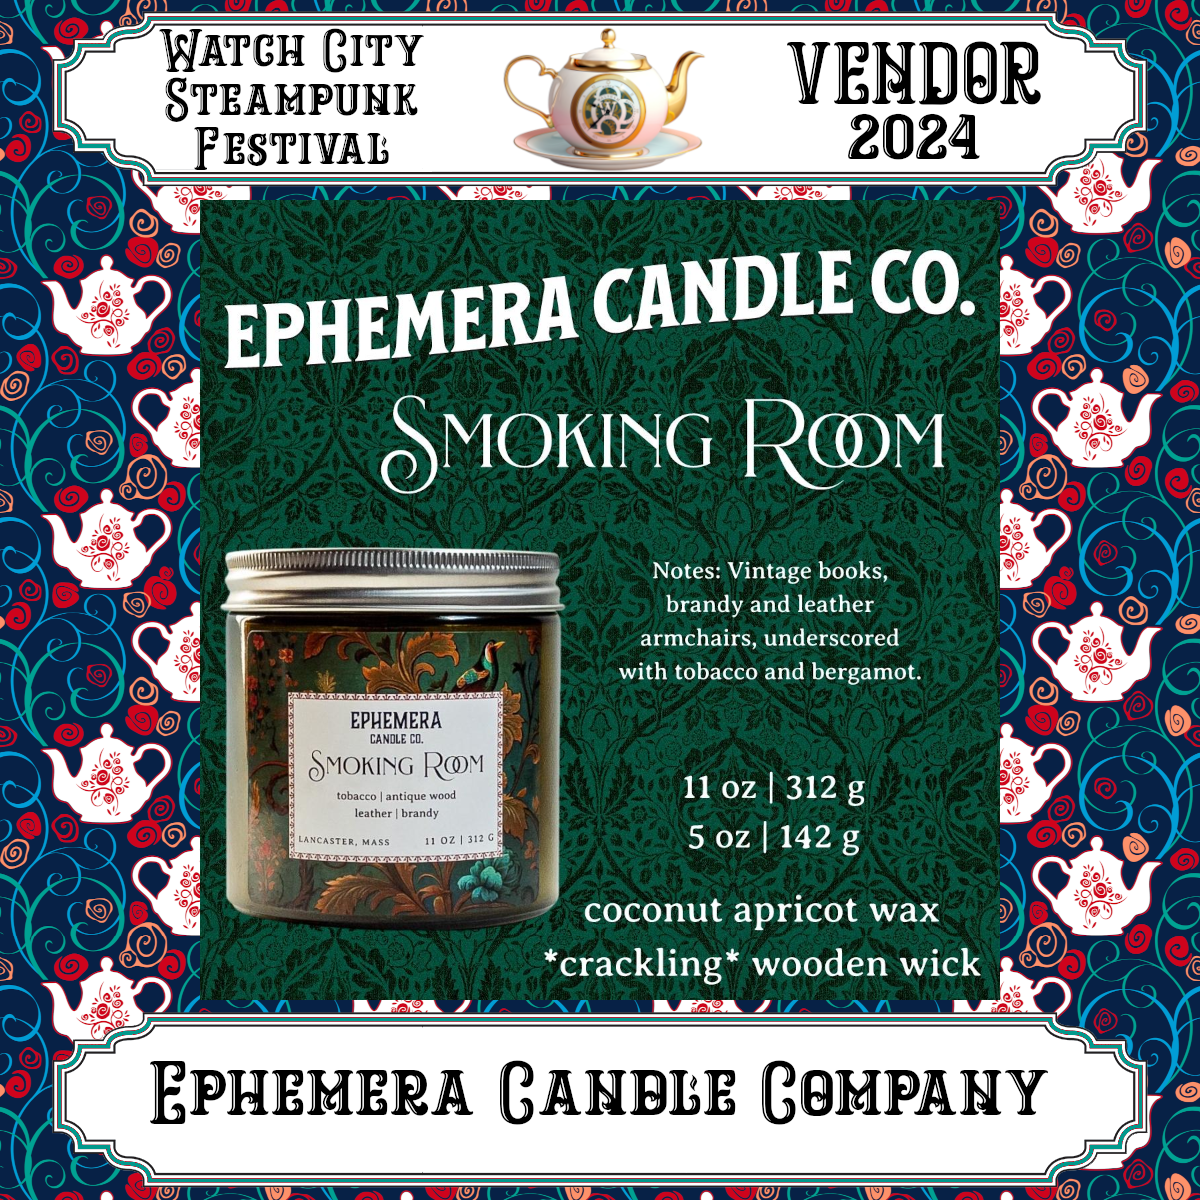 Ephemera Candle Company